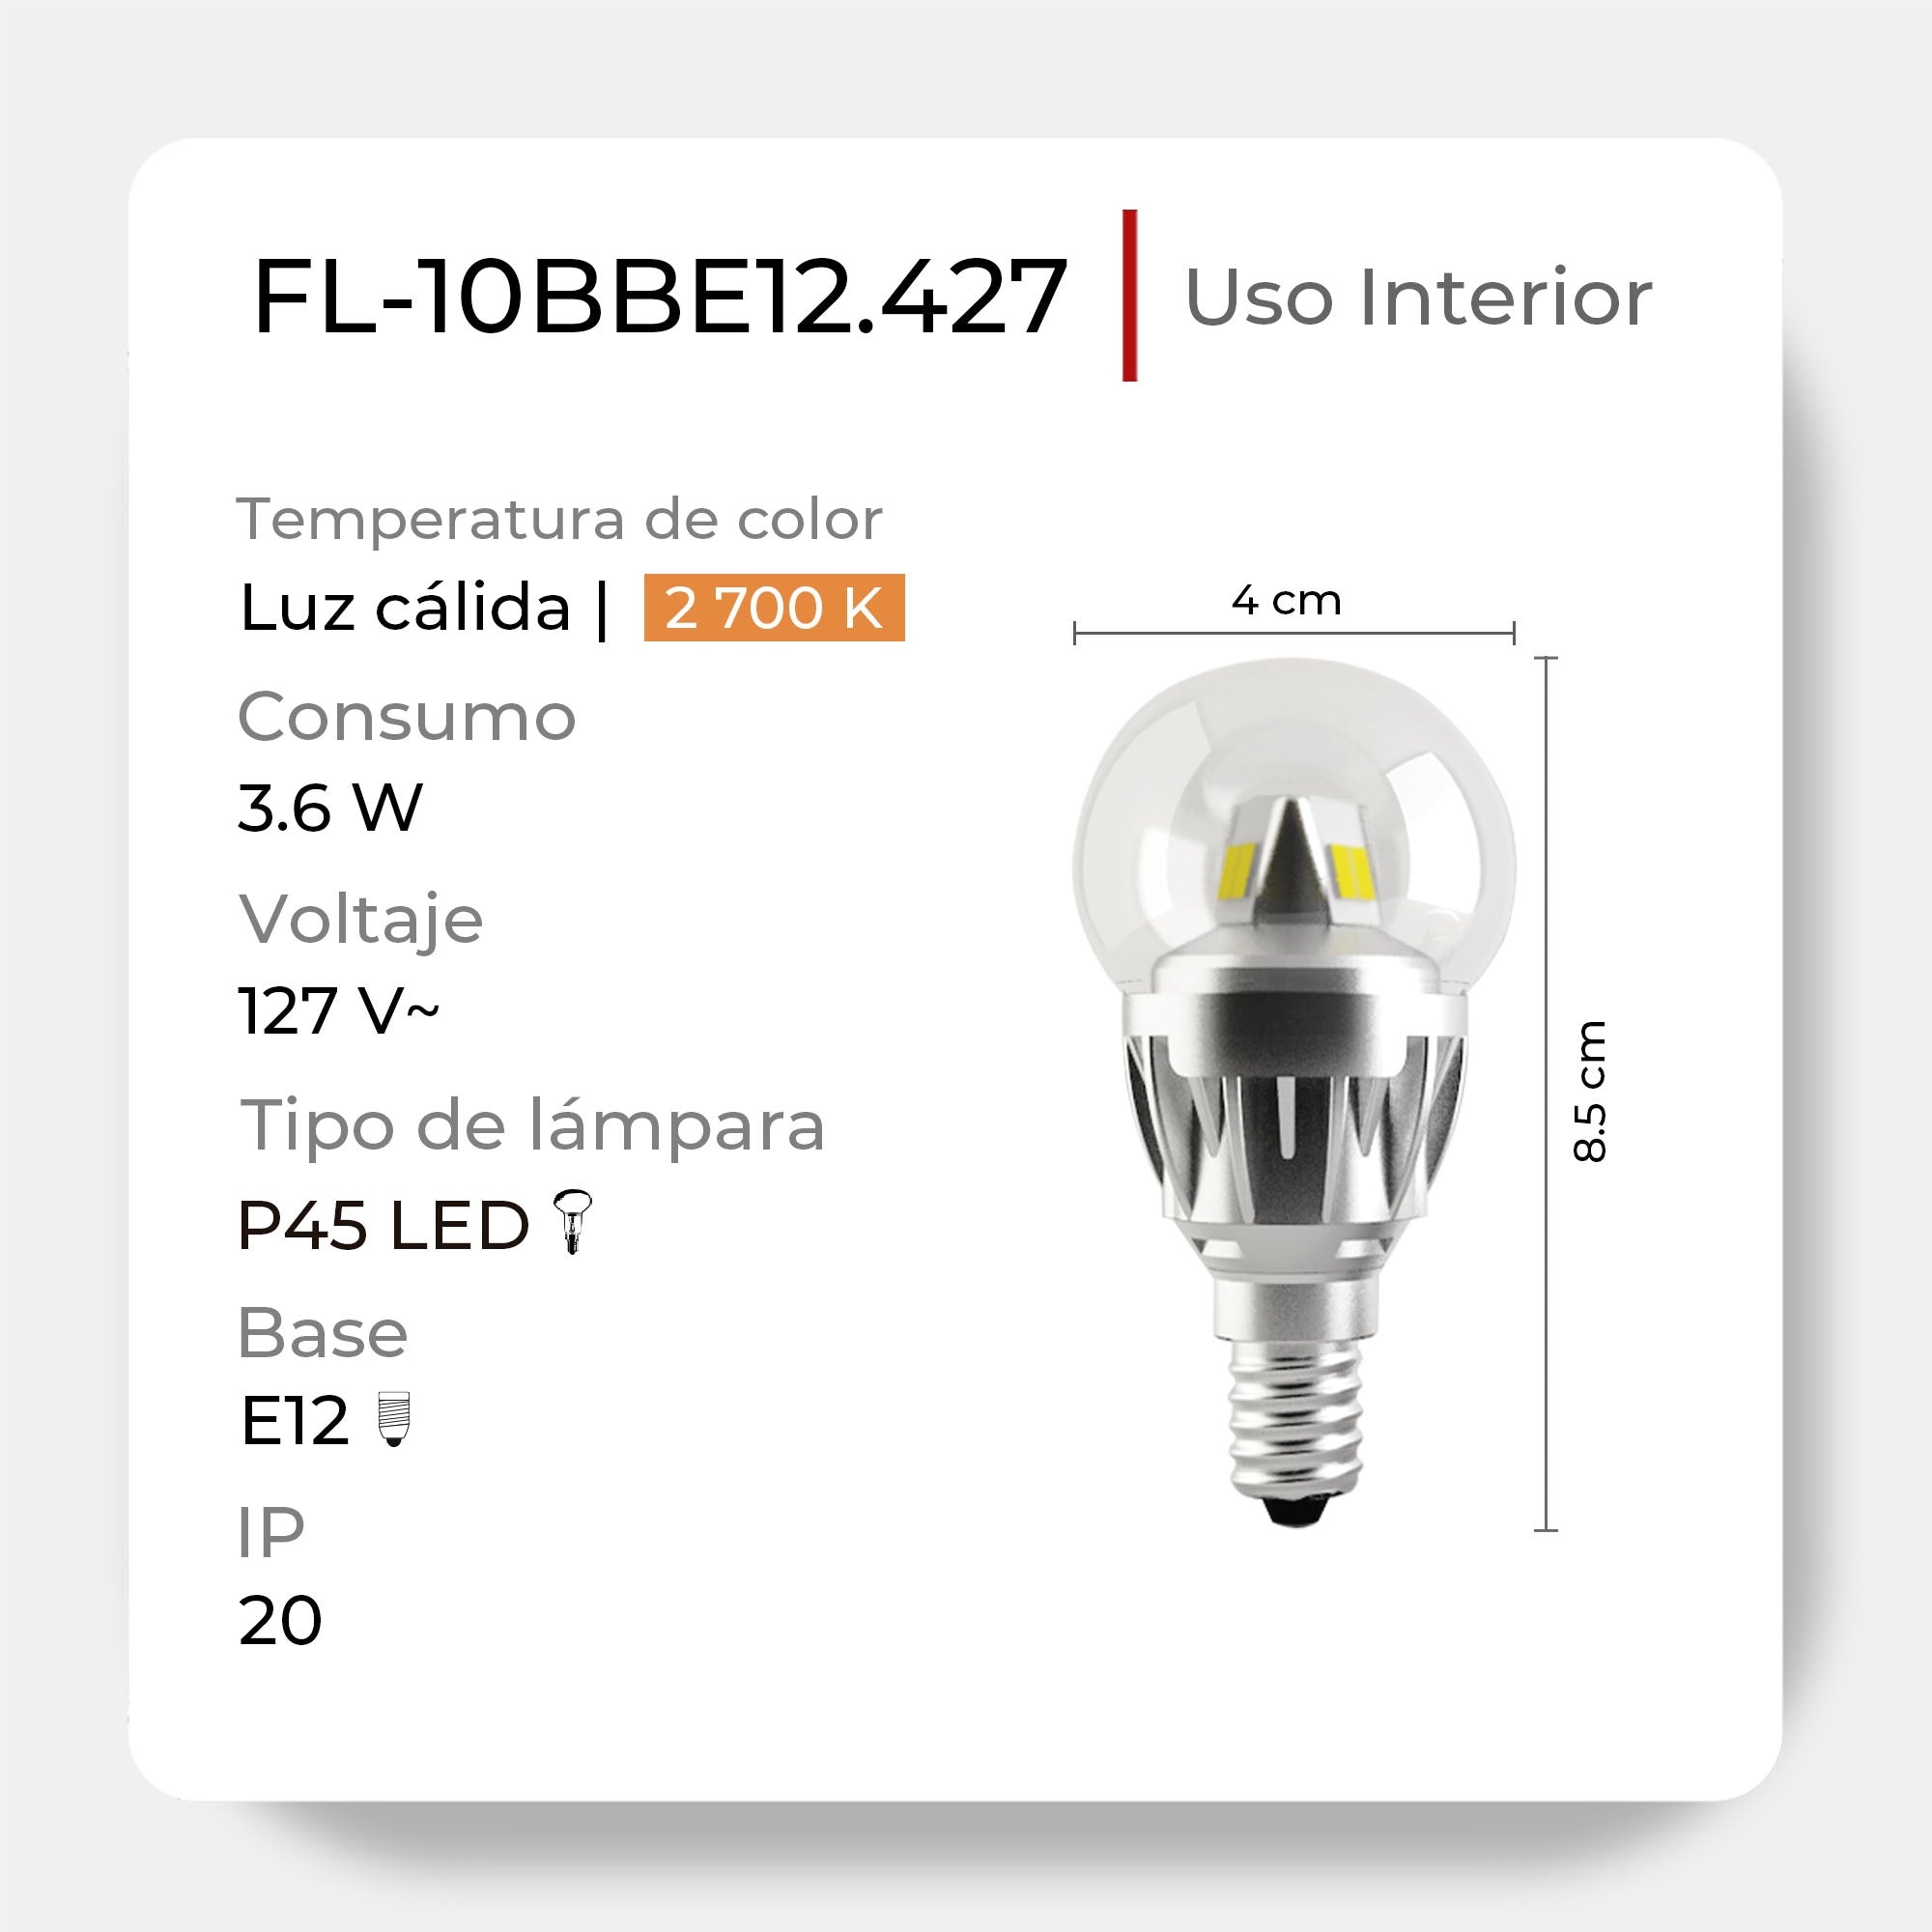 Lámpara LED P45 de 3.6 W a 127V FL-10BBE12.427